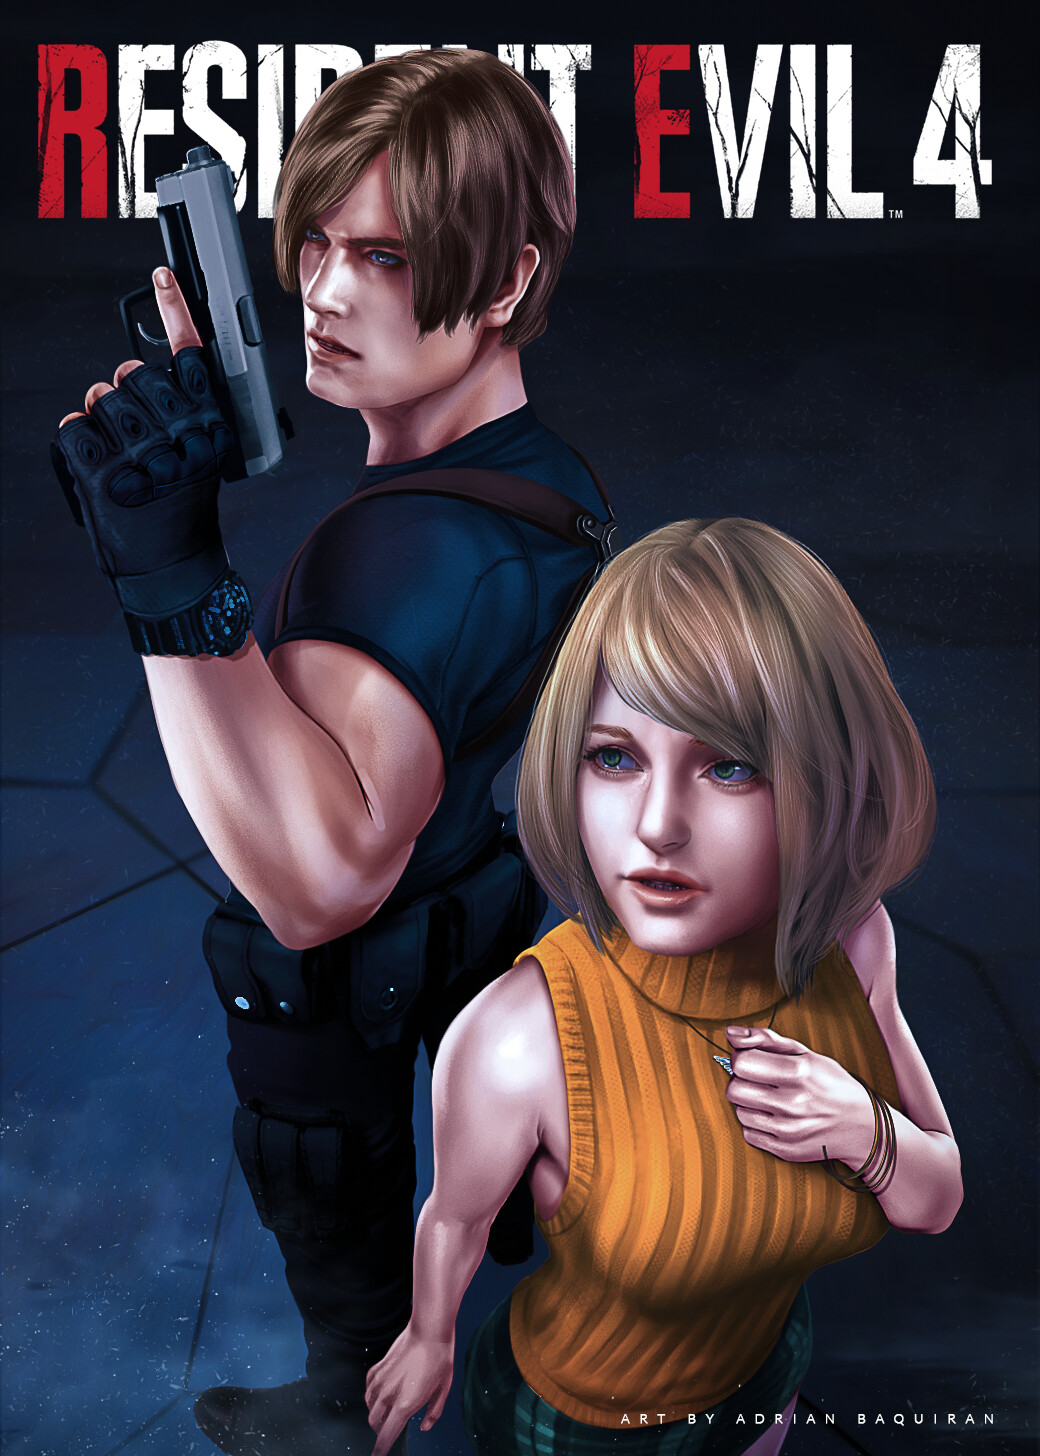 Leon, Ashley, & Ada Art - Resident Evil 4 Art Gallery